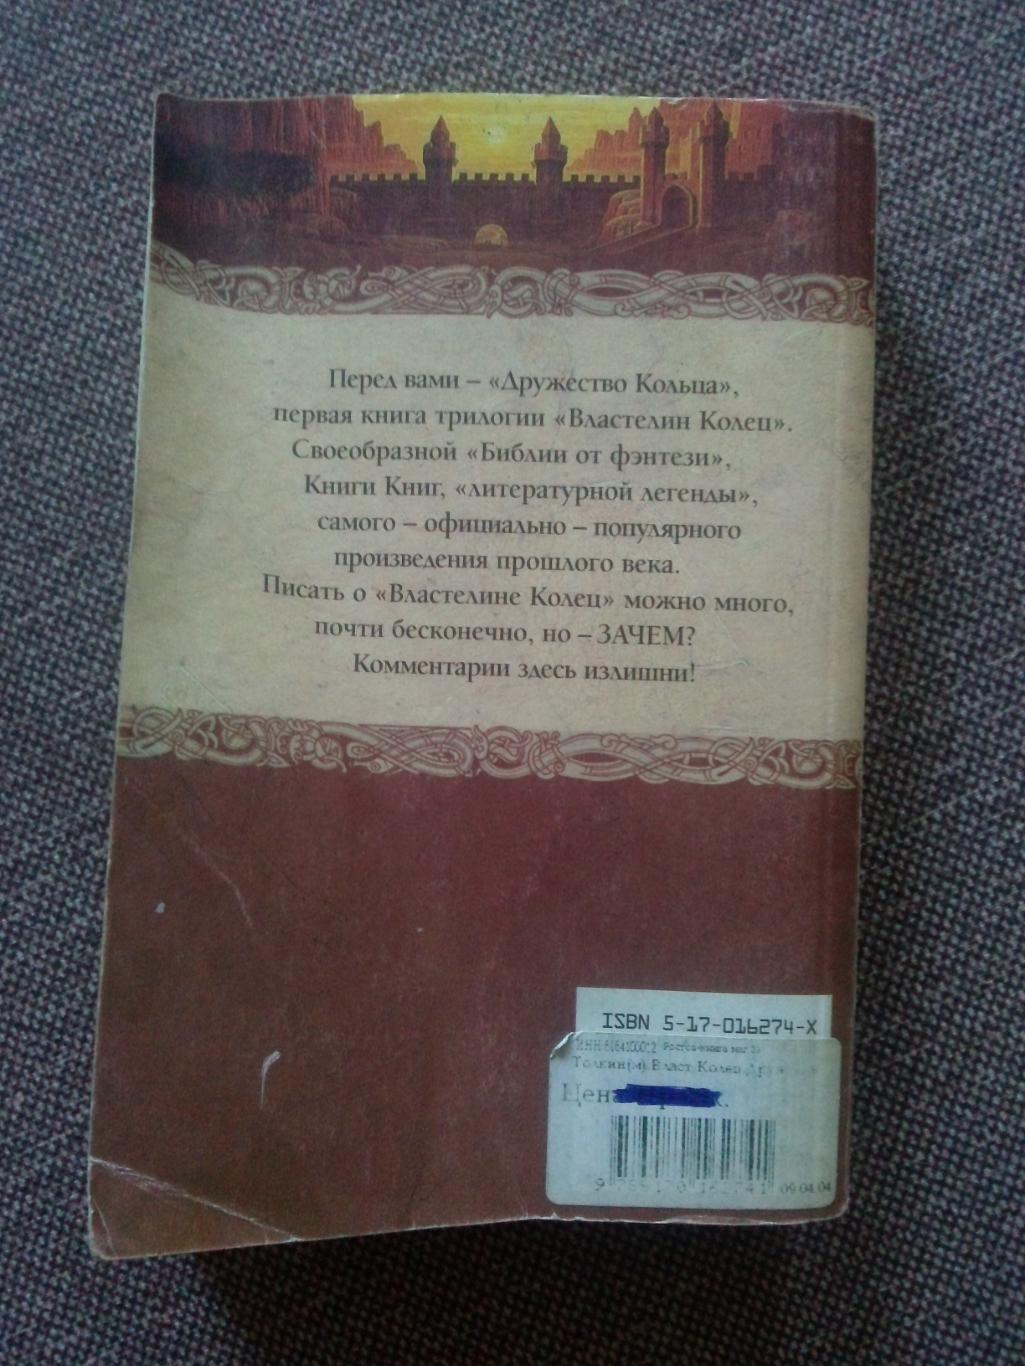 Джон Р.Р. Толкин -Властелин колец - Дружество Кольца2003 г.2 книги в одной 1